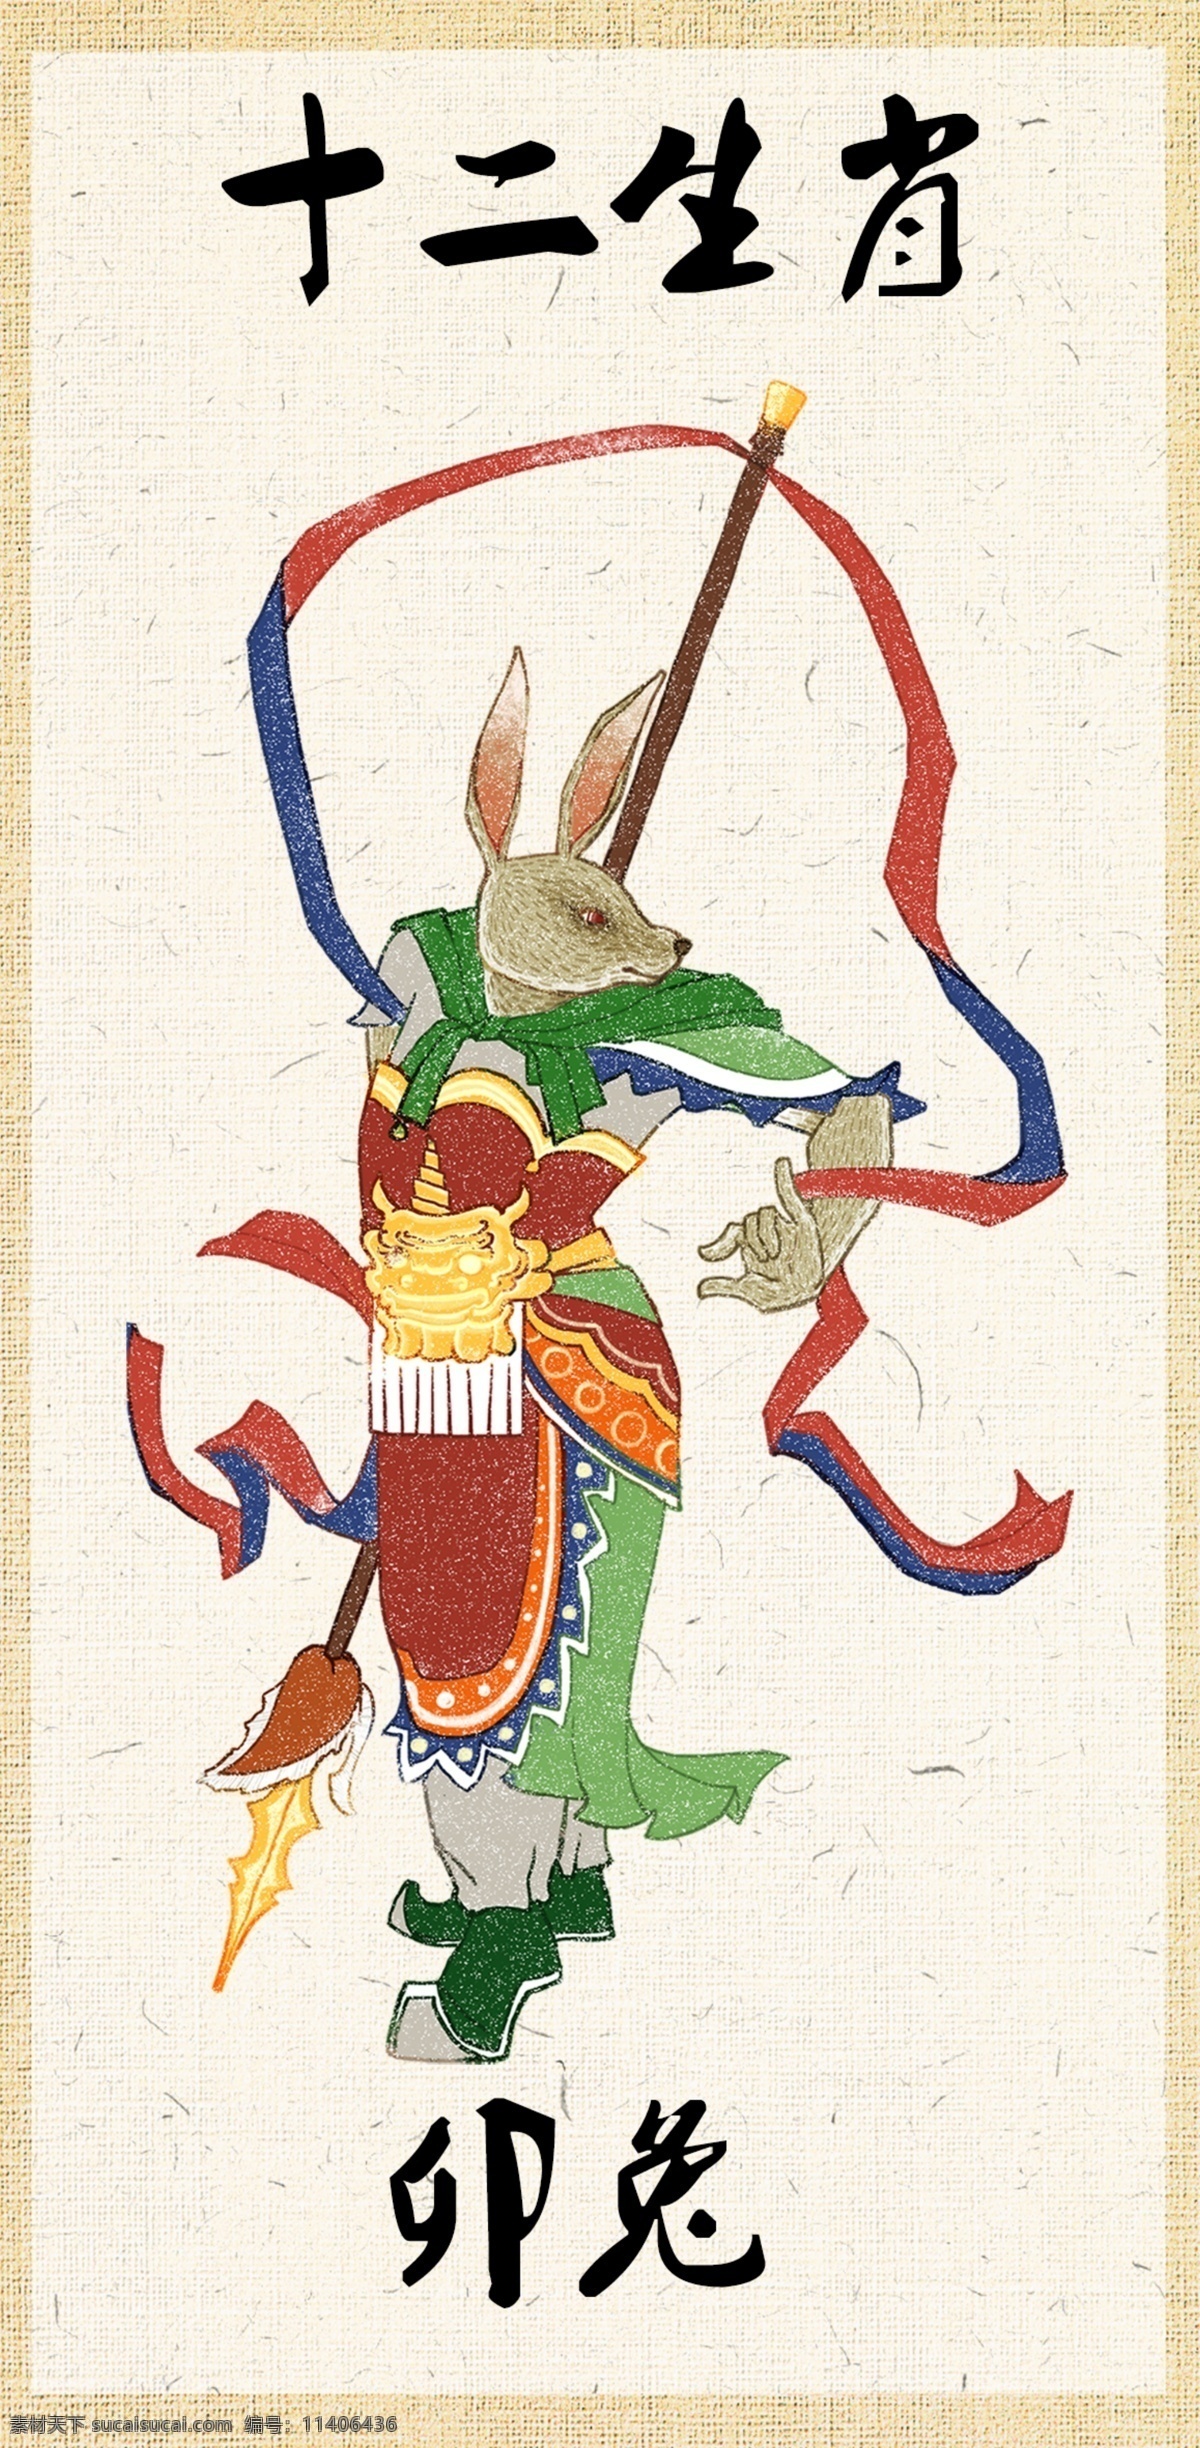 十二生肖卡通 十二生肖壁画 兔 卡通 壁画 卯兔 圣灵 生肖神灵 圣兽 十二生肖 文化艺术 传统文化